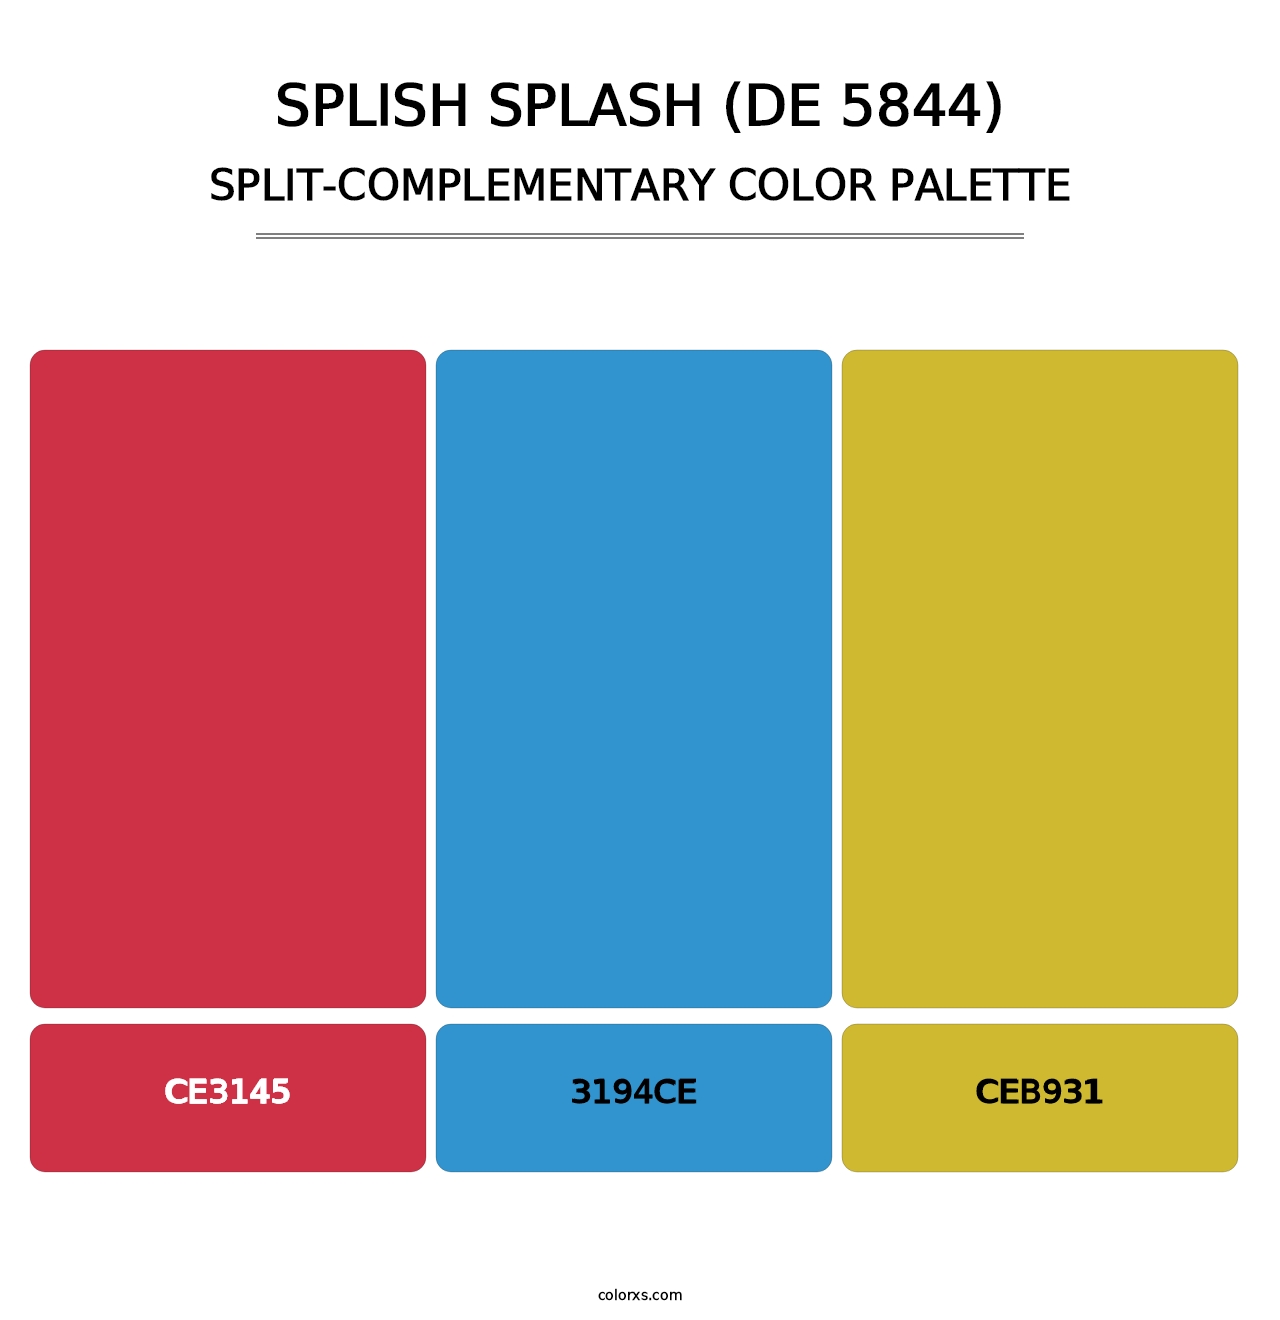 Splish Splash (DE 5844) - Split-Complementary Color Palette